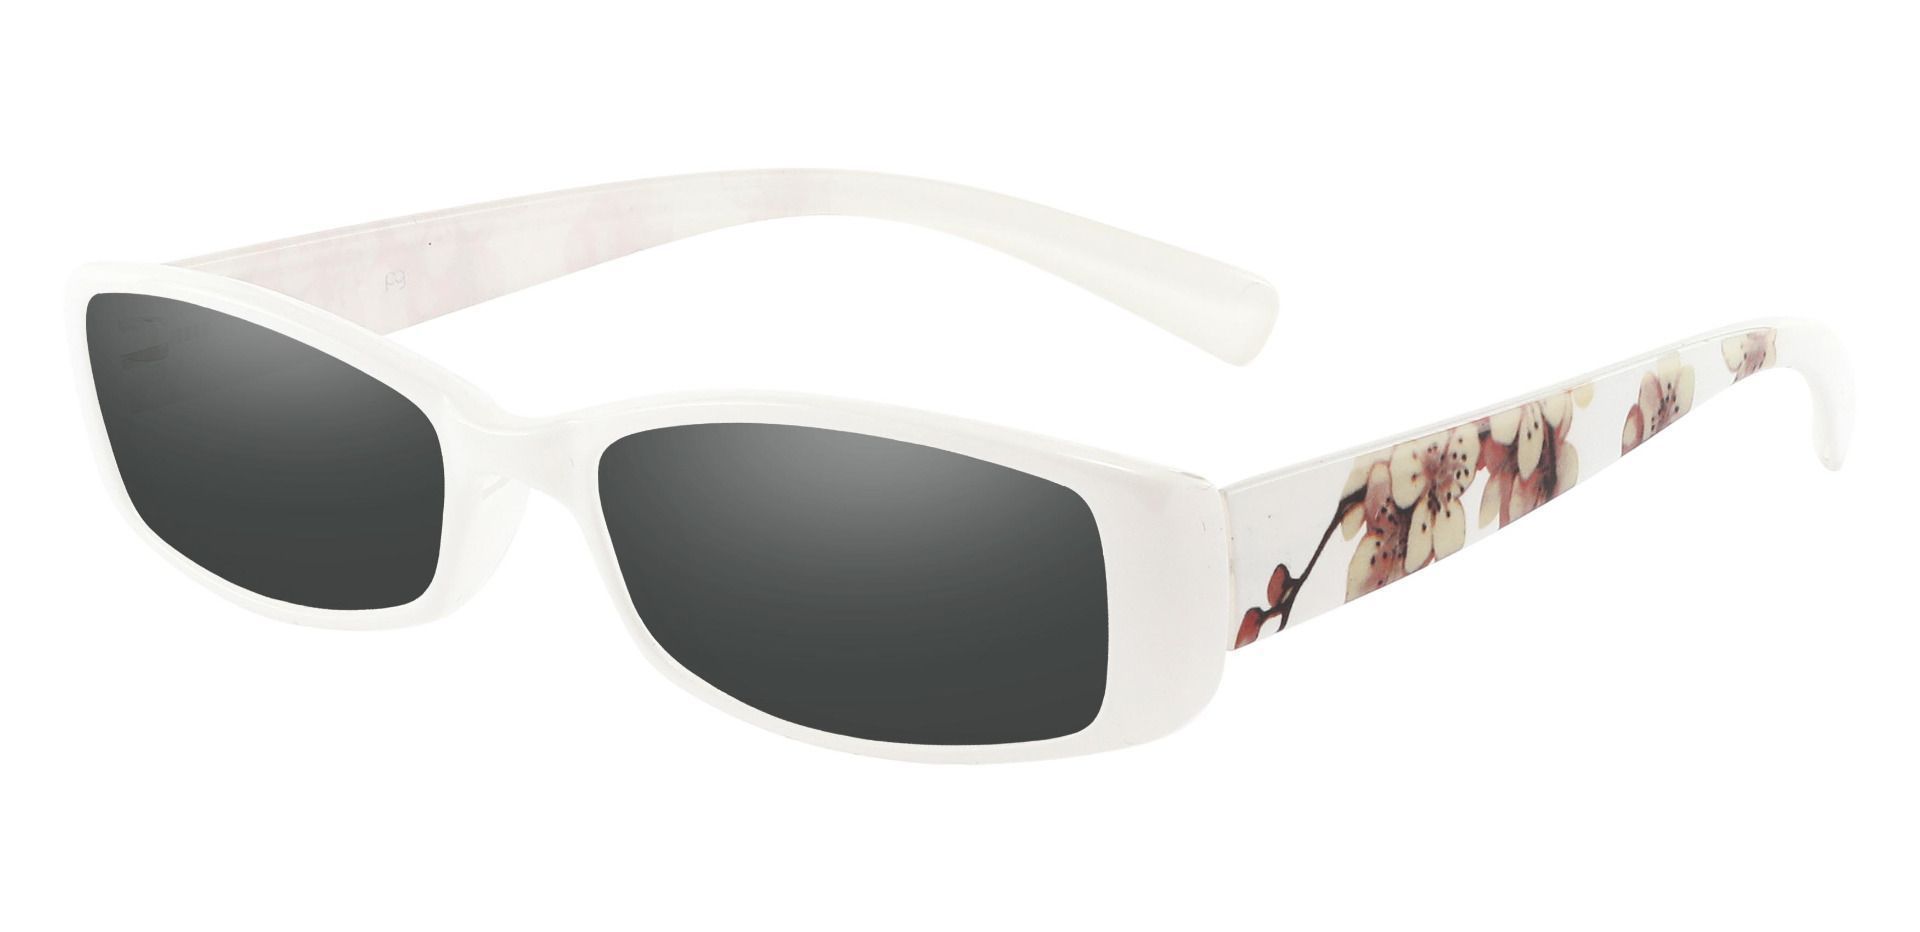 Medora Rectangle Single Vision Sunglasses - White Frame With Gray Lenses